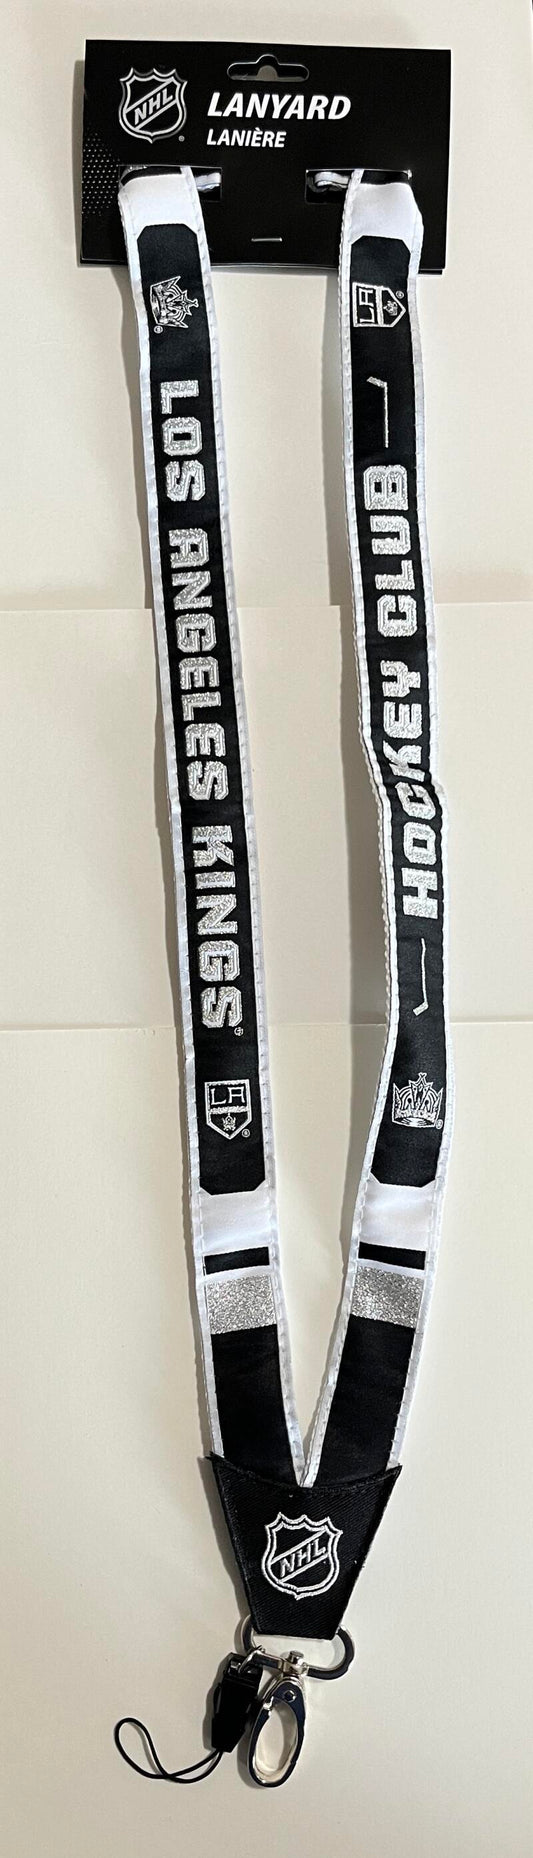 Los Angeles Kings Woven Licensed NHL Hockey Lanyard Metal Clasp Image 1